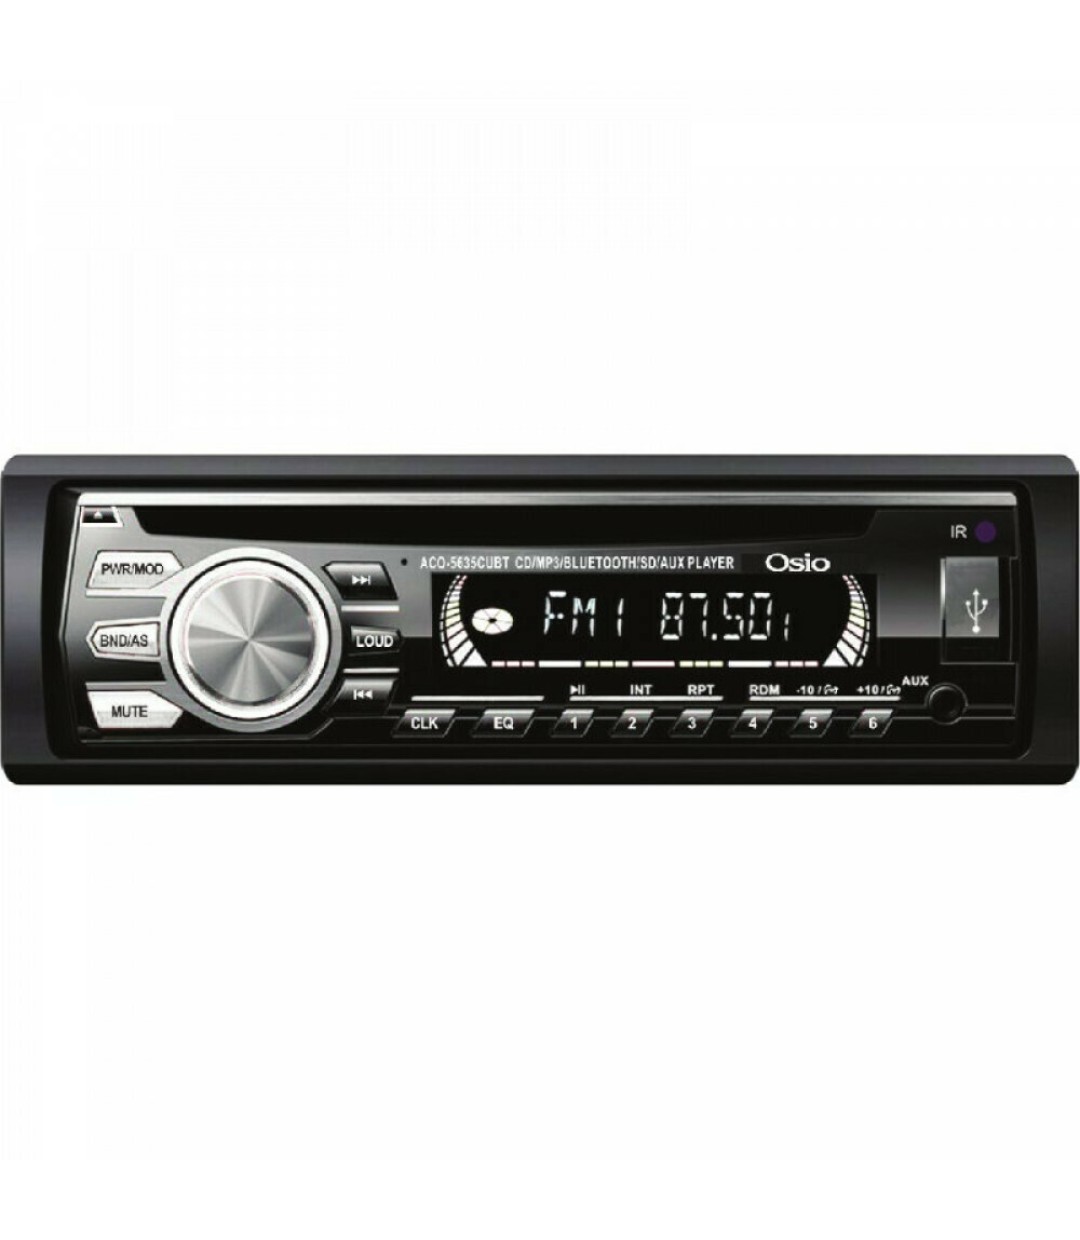 Ηχοσύστημα Αυτοκινήτου 4 x 45 W (CD/Bluetooth/USB/AUX) με Αποσπώμενη Πρόσοψη ACO-5635CUBT Osio